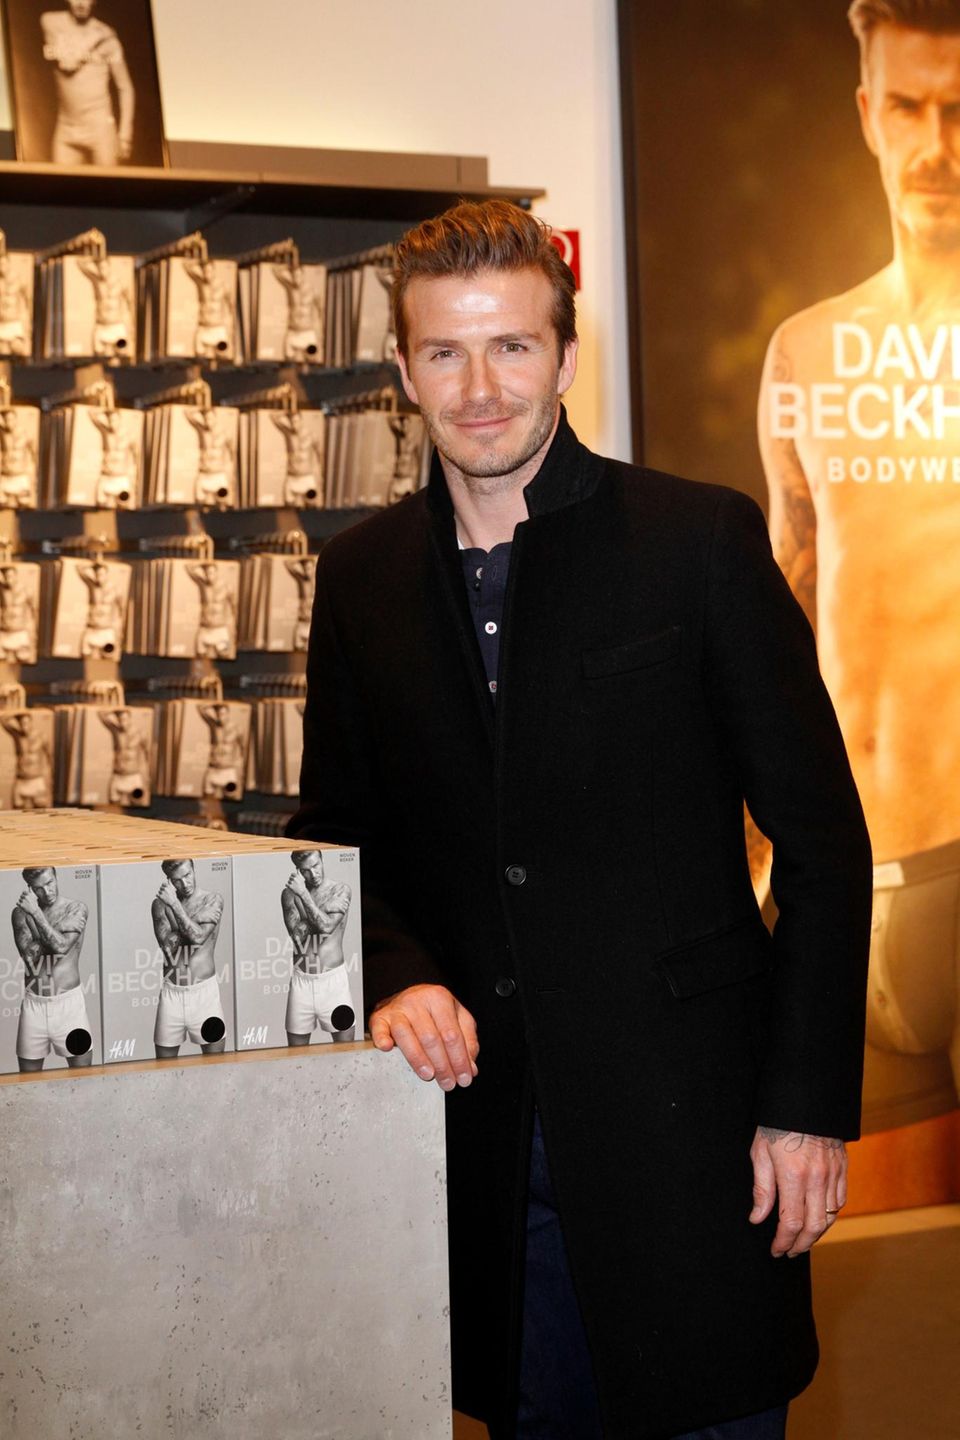 Am Alexanderplatz in Berlin präsentiert David Beckham letzte Woche seine neue Bodywear-Kollektion für H&M. "Drunter mag ich es schlicht und gemütlich", sagt er.